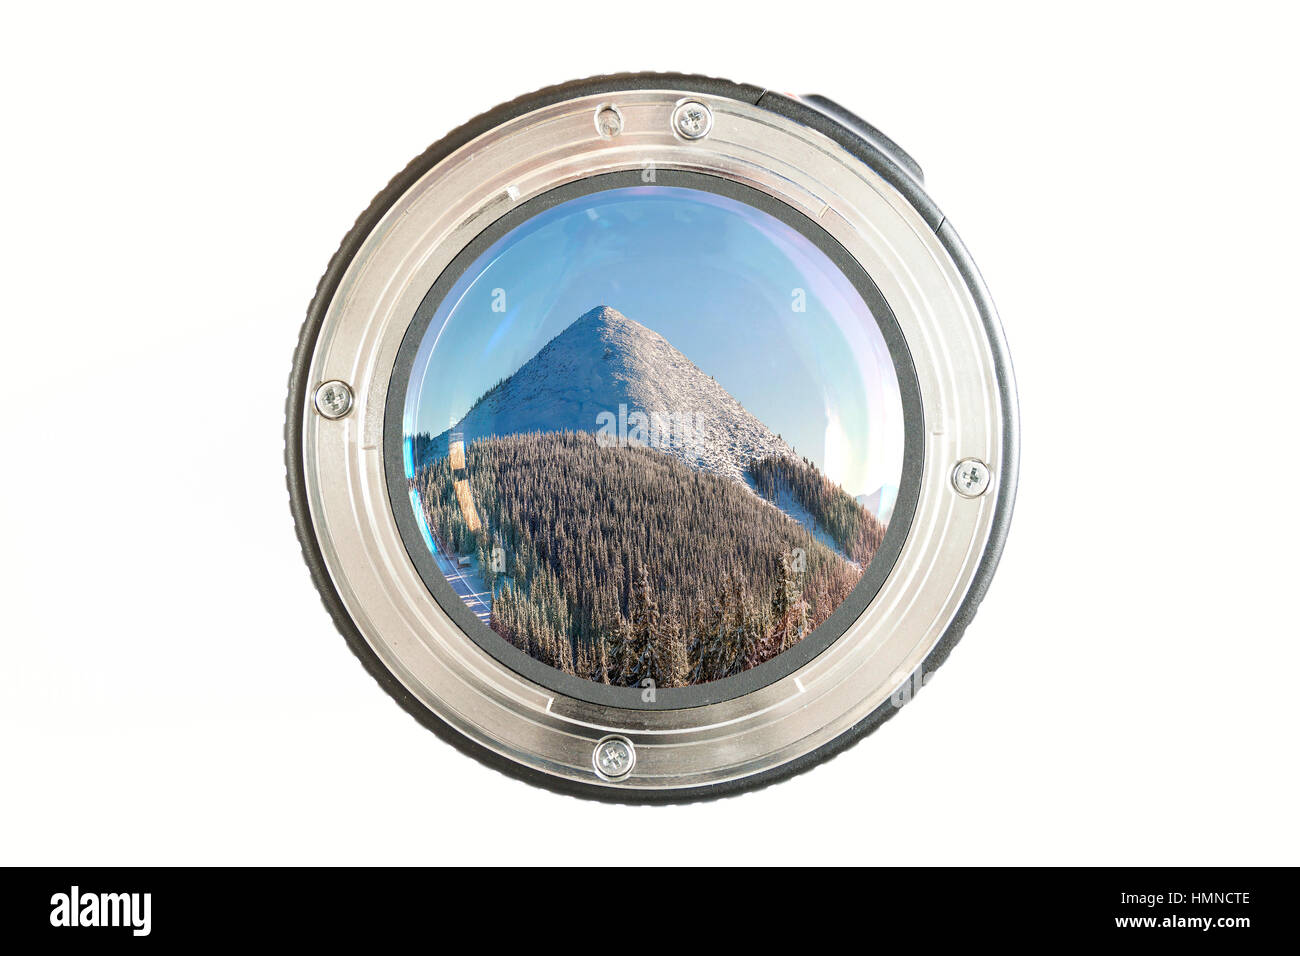 Kamera Foto Objektiv close-up auf weißem Hintergrund mit Objektiv Reflexionen und Panoramablick auf schneebedeckte Berge im winter Stockfoto